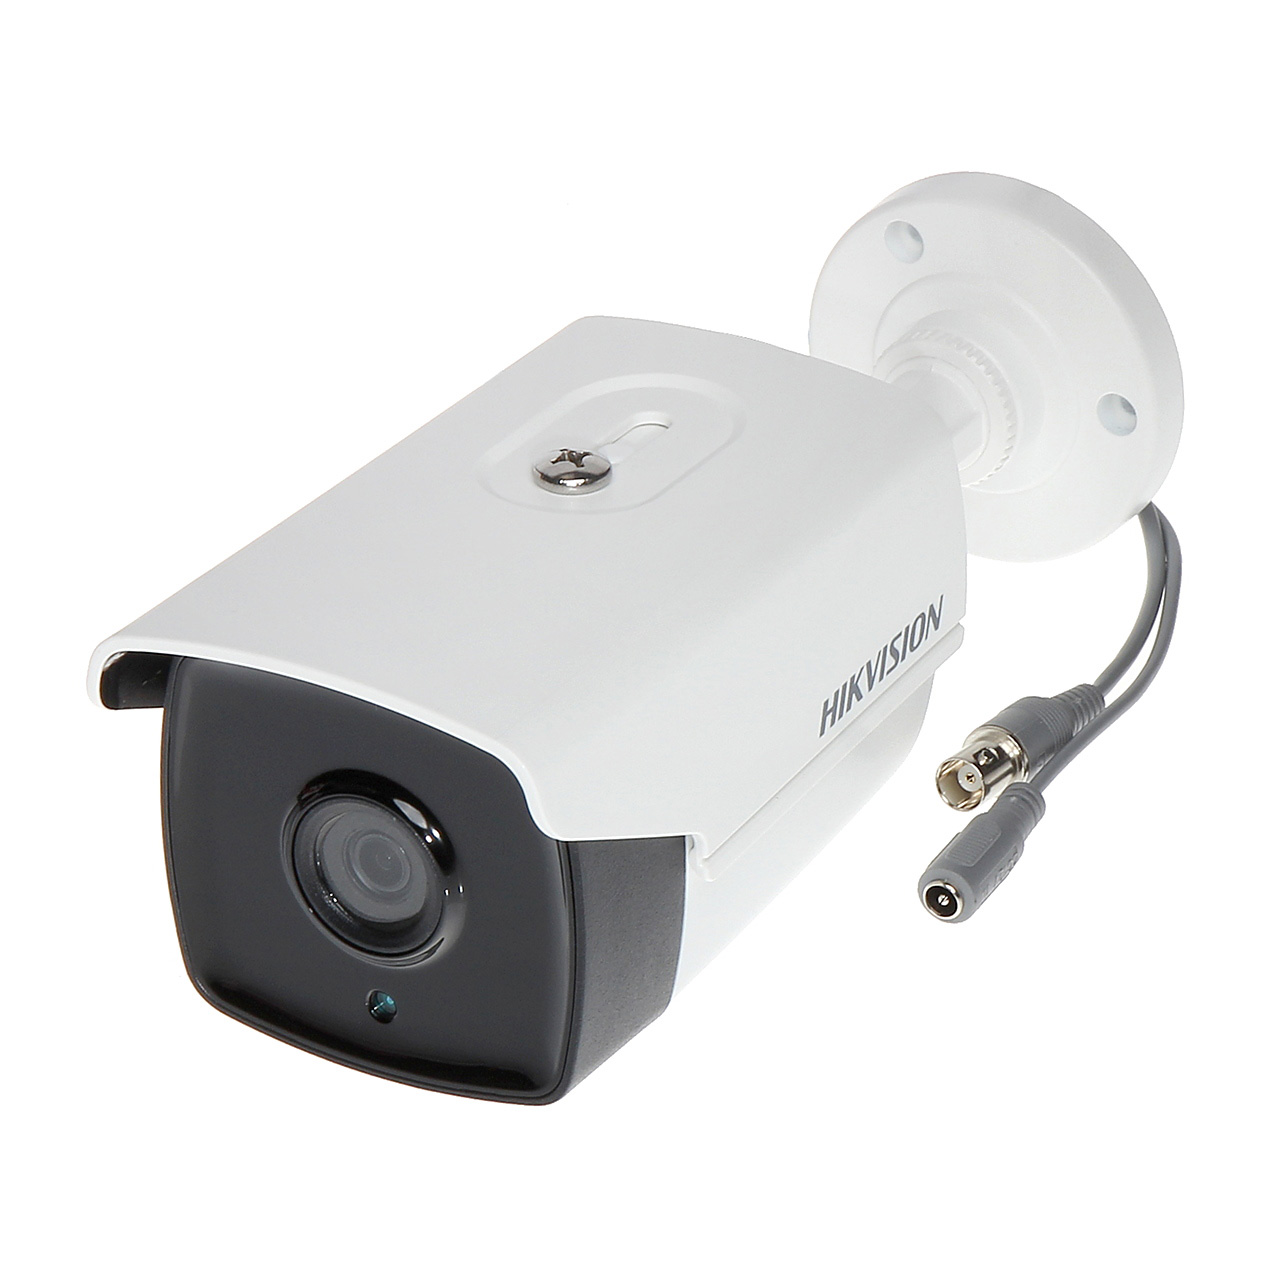 Камера видеонаблюдения 3 мп. HIWATCH DS-t220 6мм. HIWATCH DS-t220s(b)(6 mm). HIWATCH DS-t220s(b) 6мм. Hikvision DS-2ce16d8t.